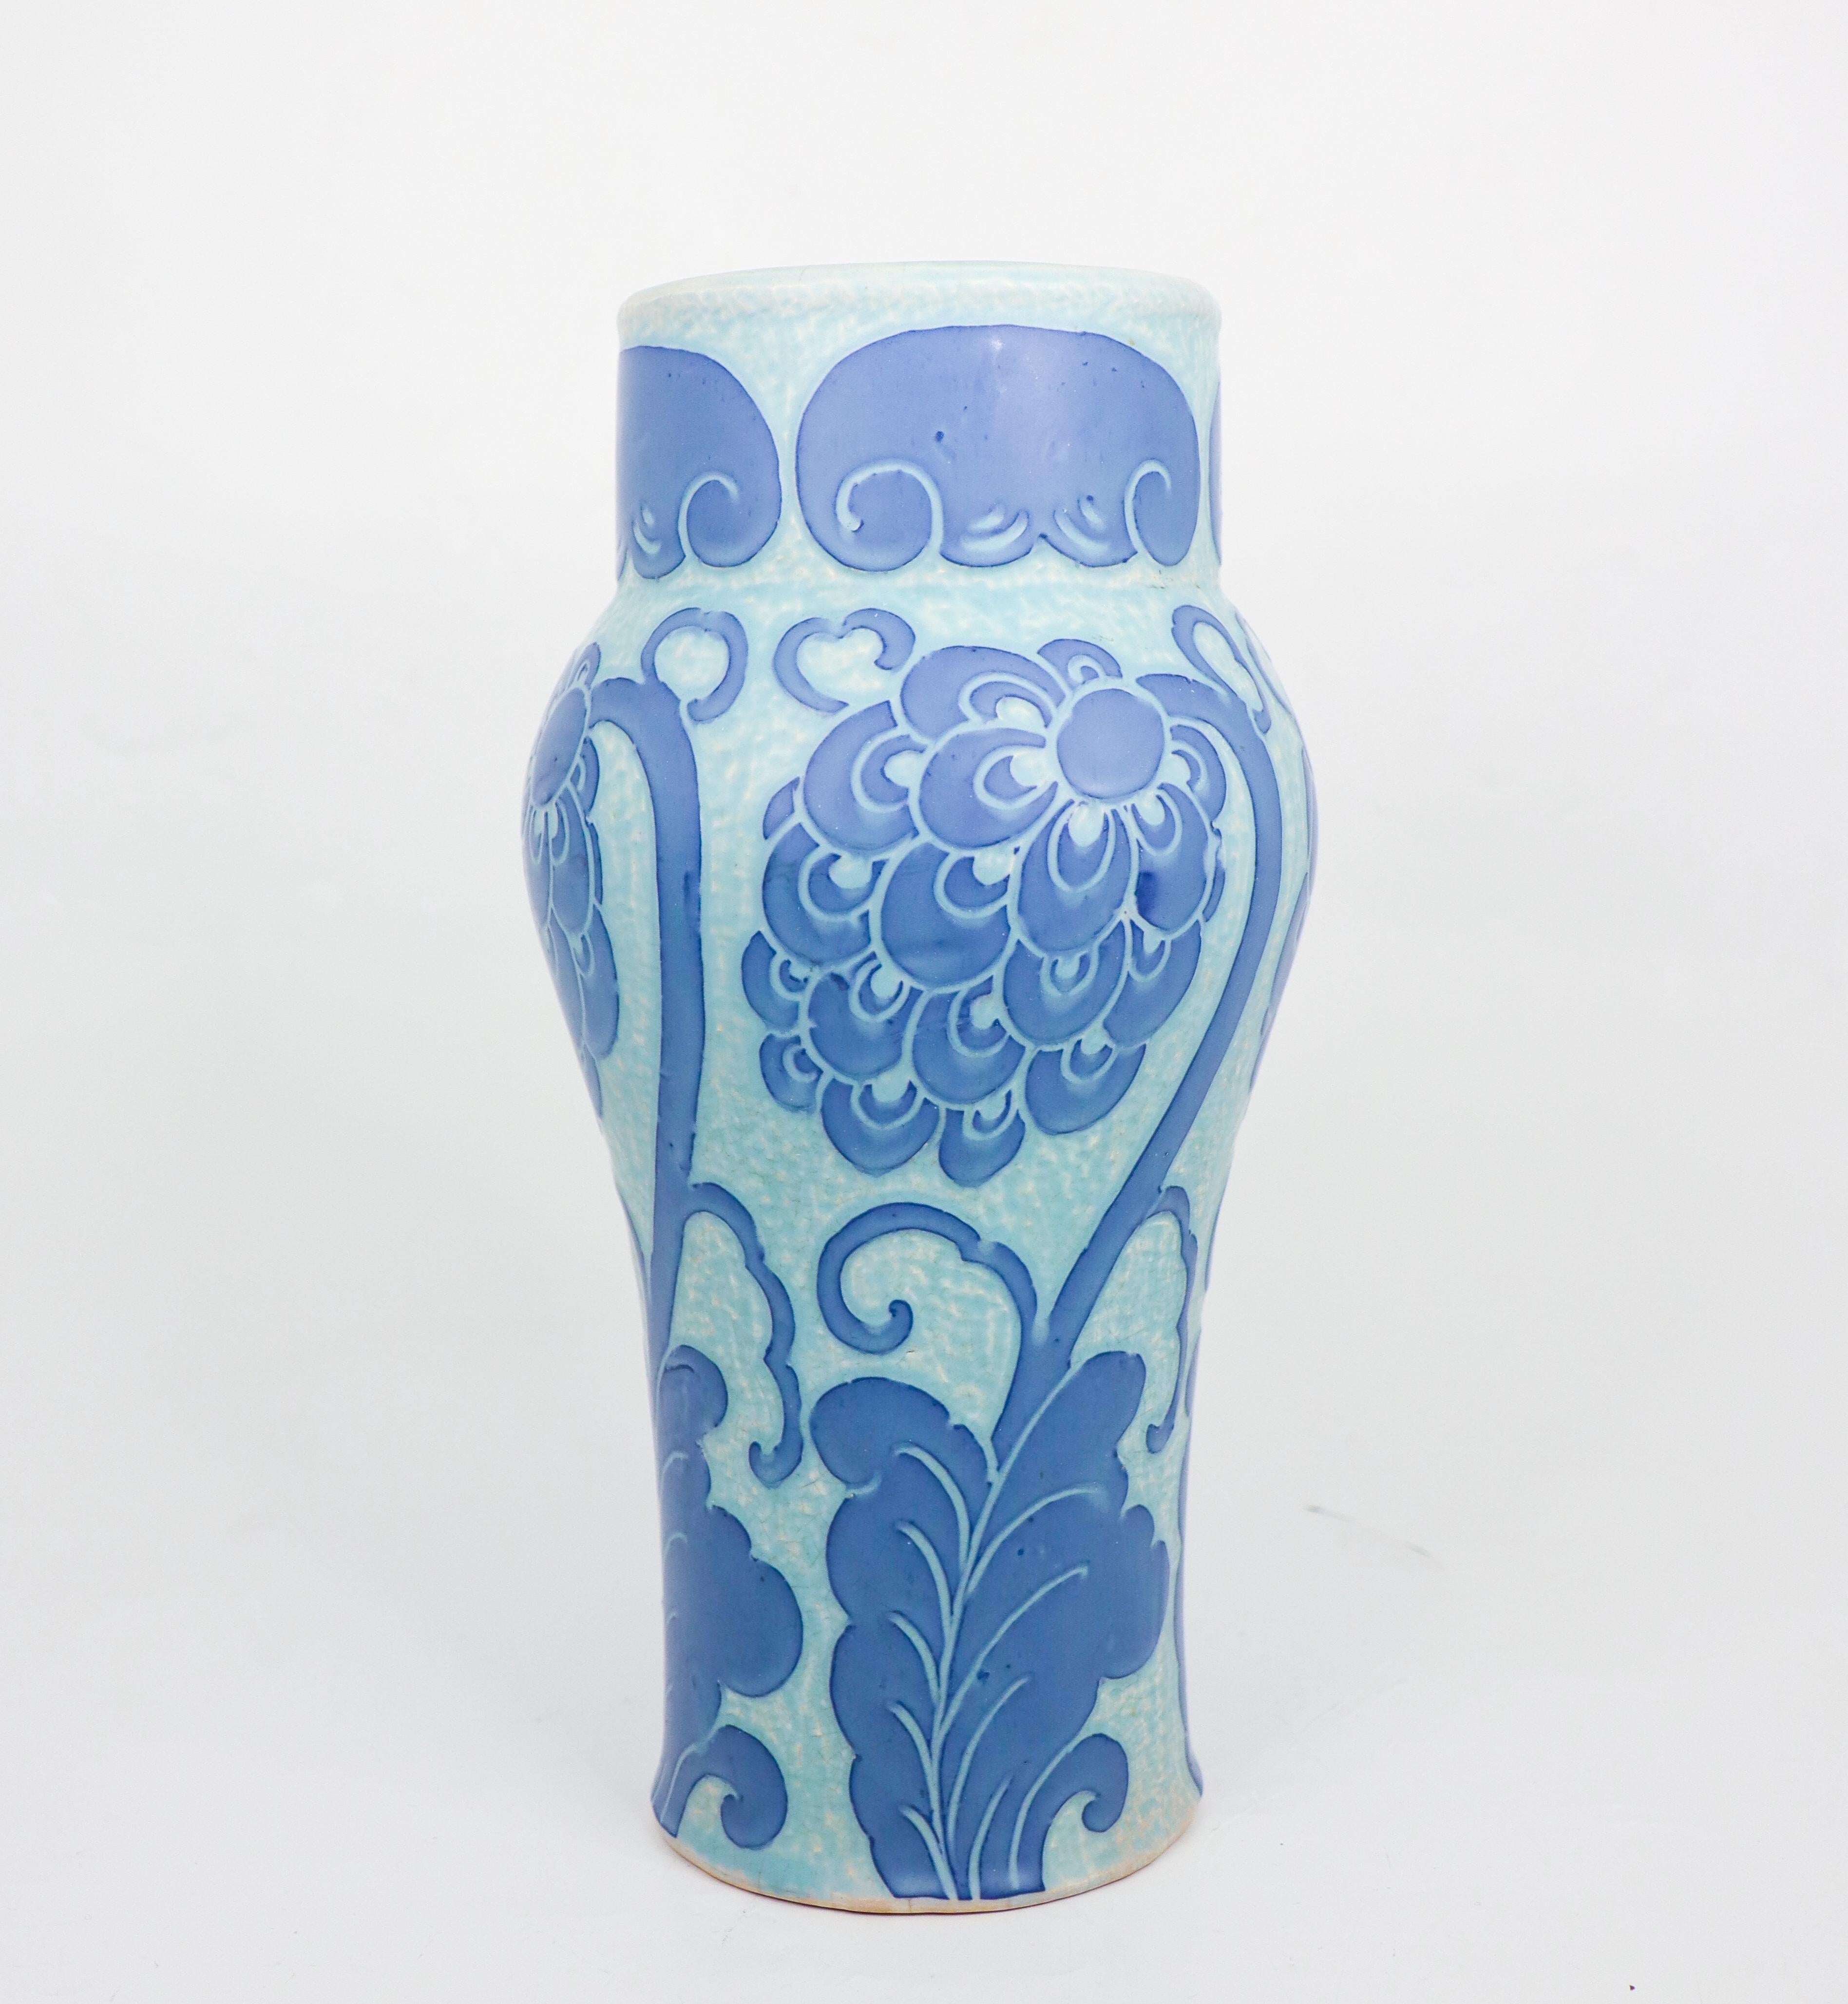 Diese Jugendstilvase aus Keramik wurde 1920 von Josef Ekberg bei Gustavsberg entworfen und stammt aus der klassischen Sgrafitto-Serie. Die Vase ist 28 cm (11,2